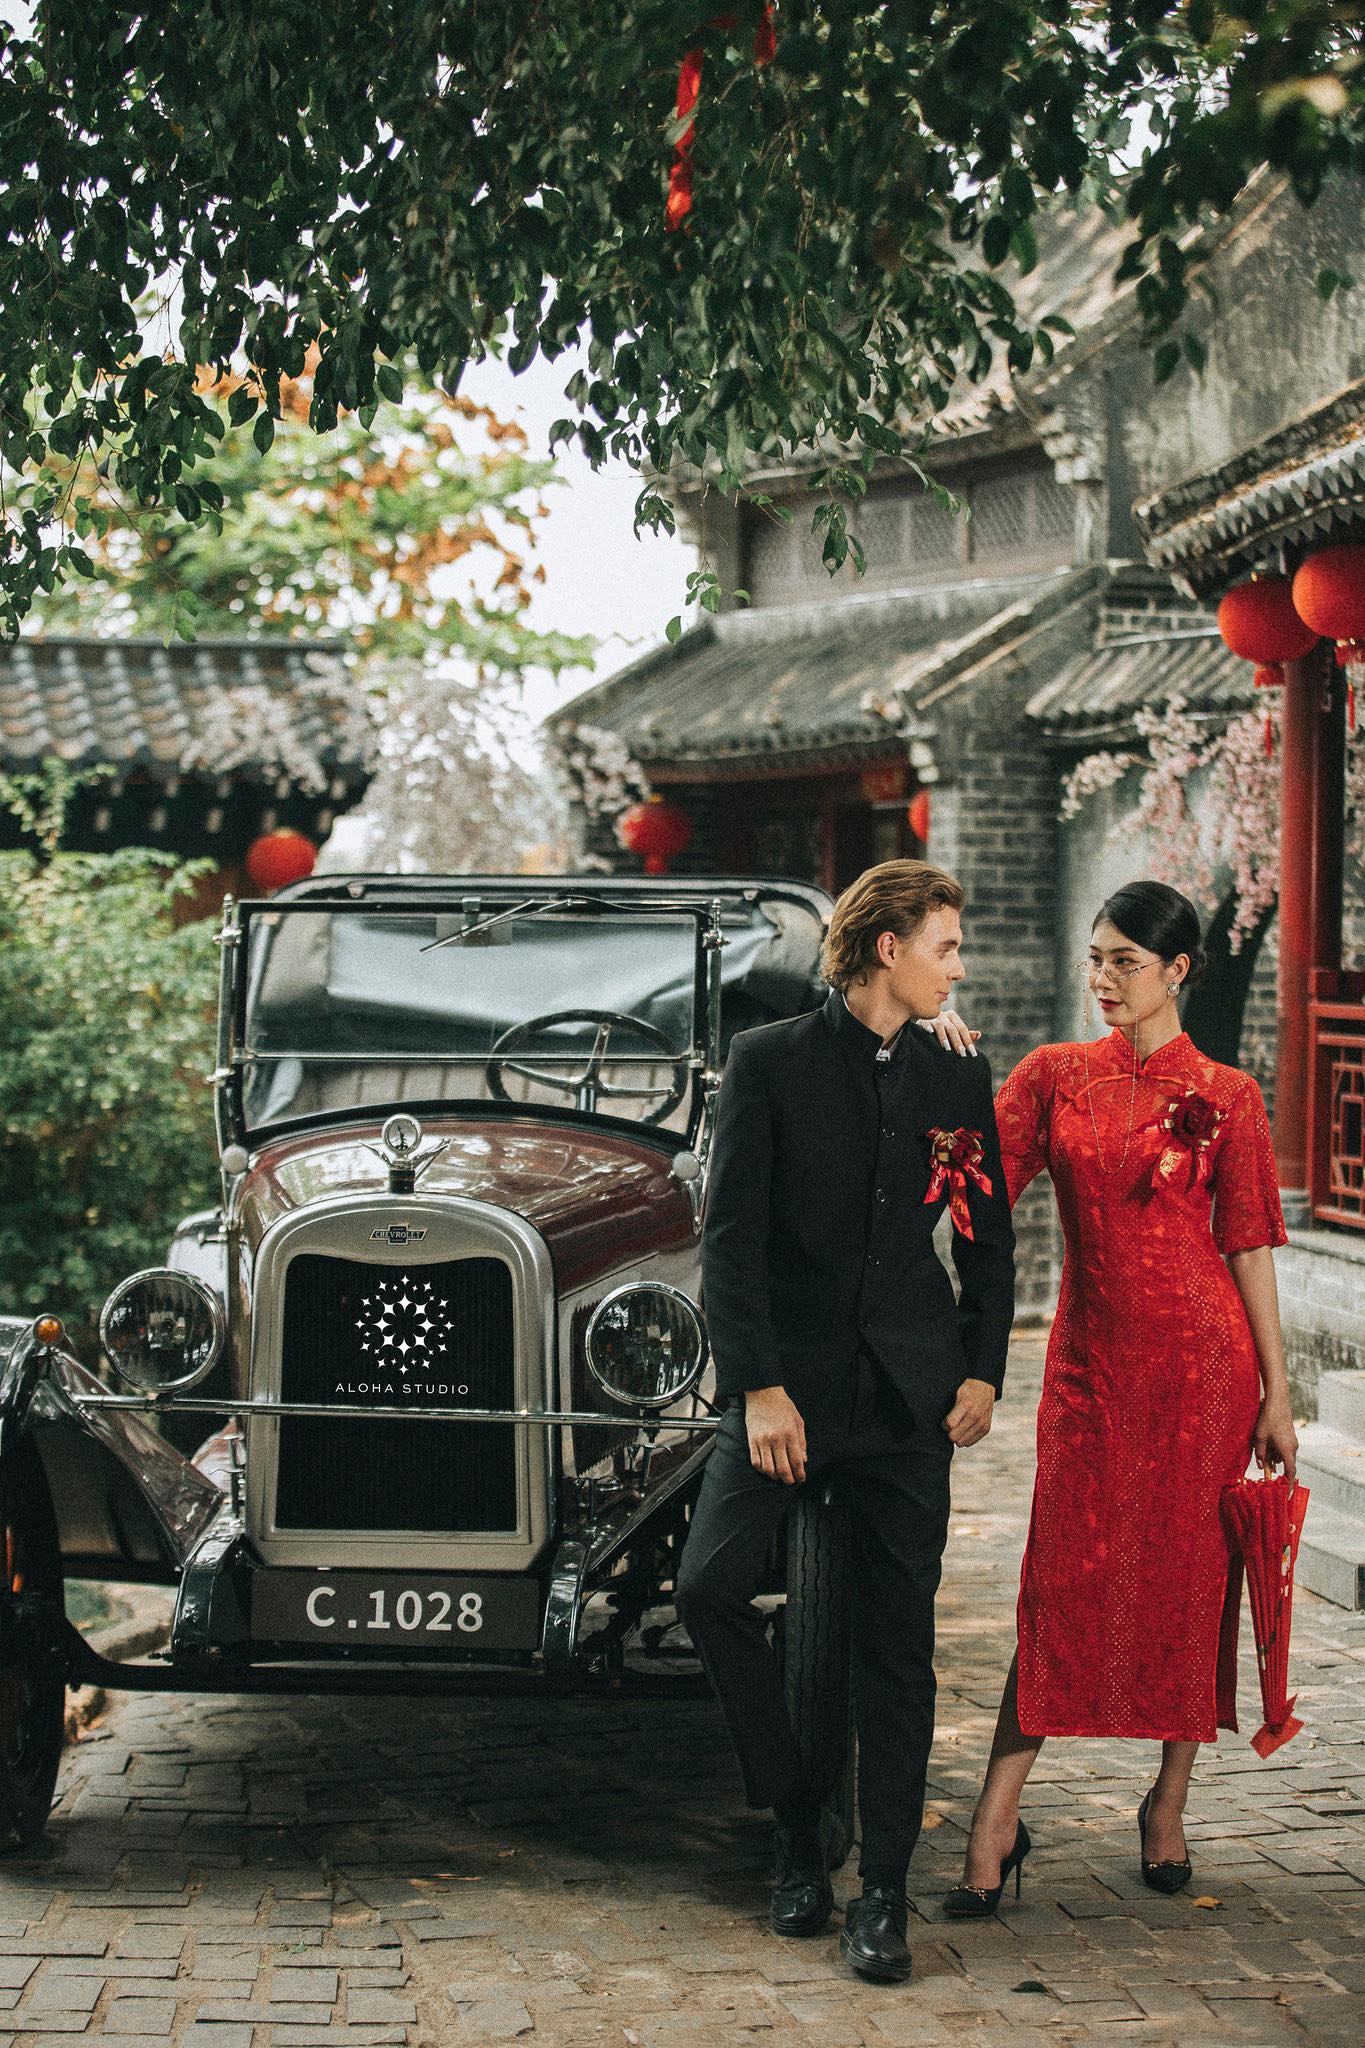 Xếp hạng 10 studio chụp ảnh cưới đẹp nhất Thành phố Hồ Chí Minh - Aloha Studio